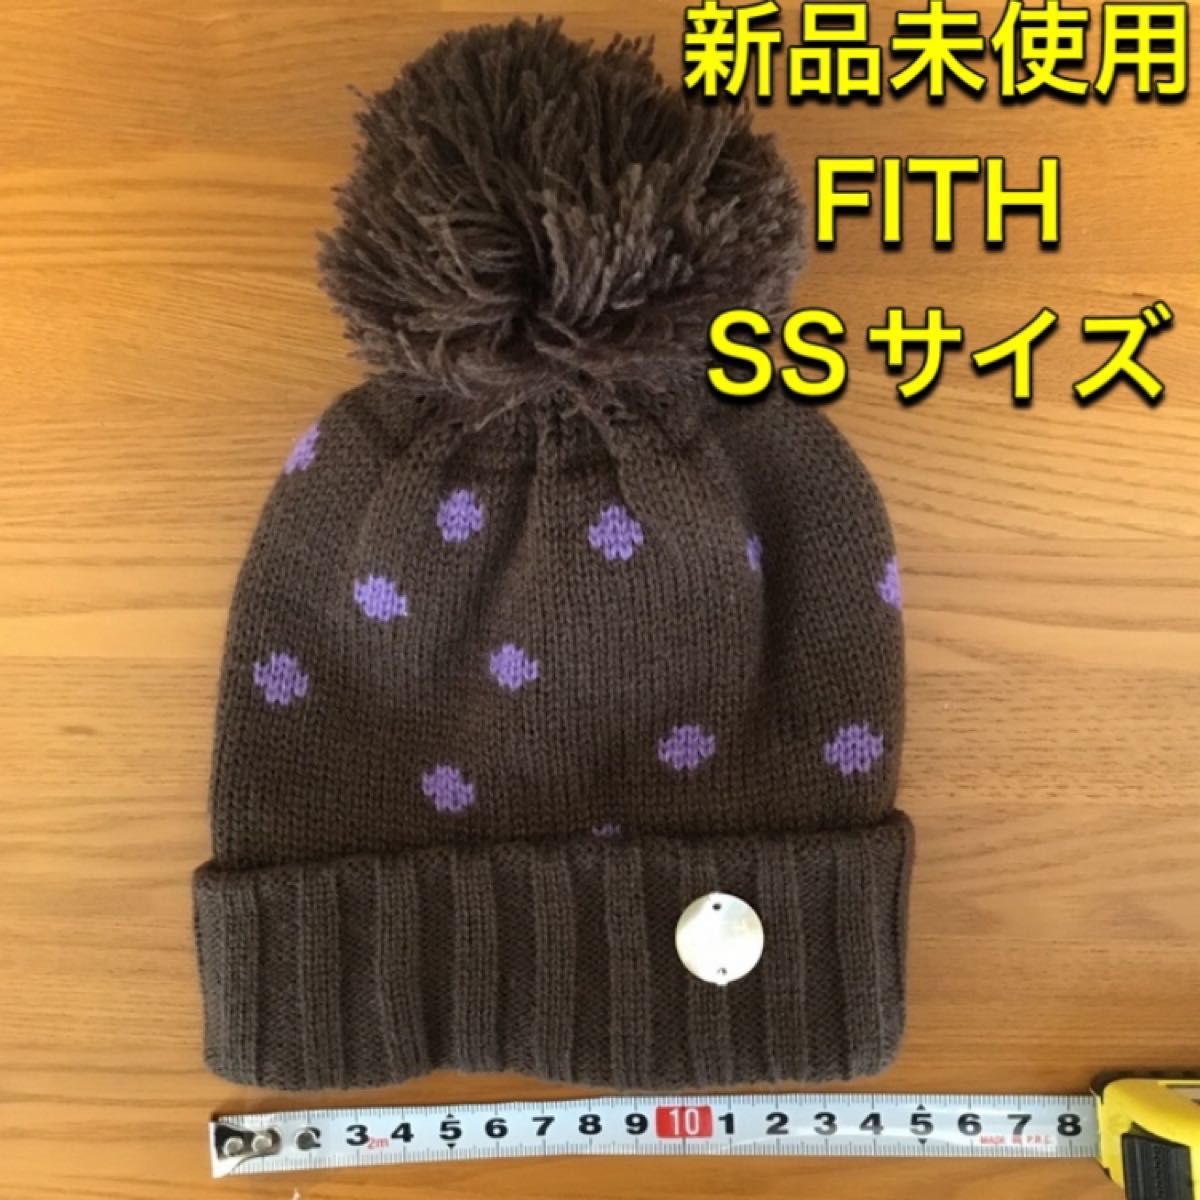 新品未使用 FITH ニット帽 SSサイズ ニットキャップ ニット帽子